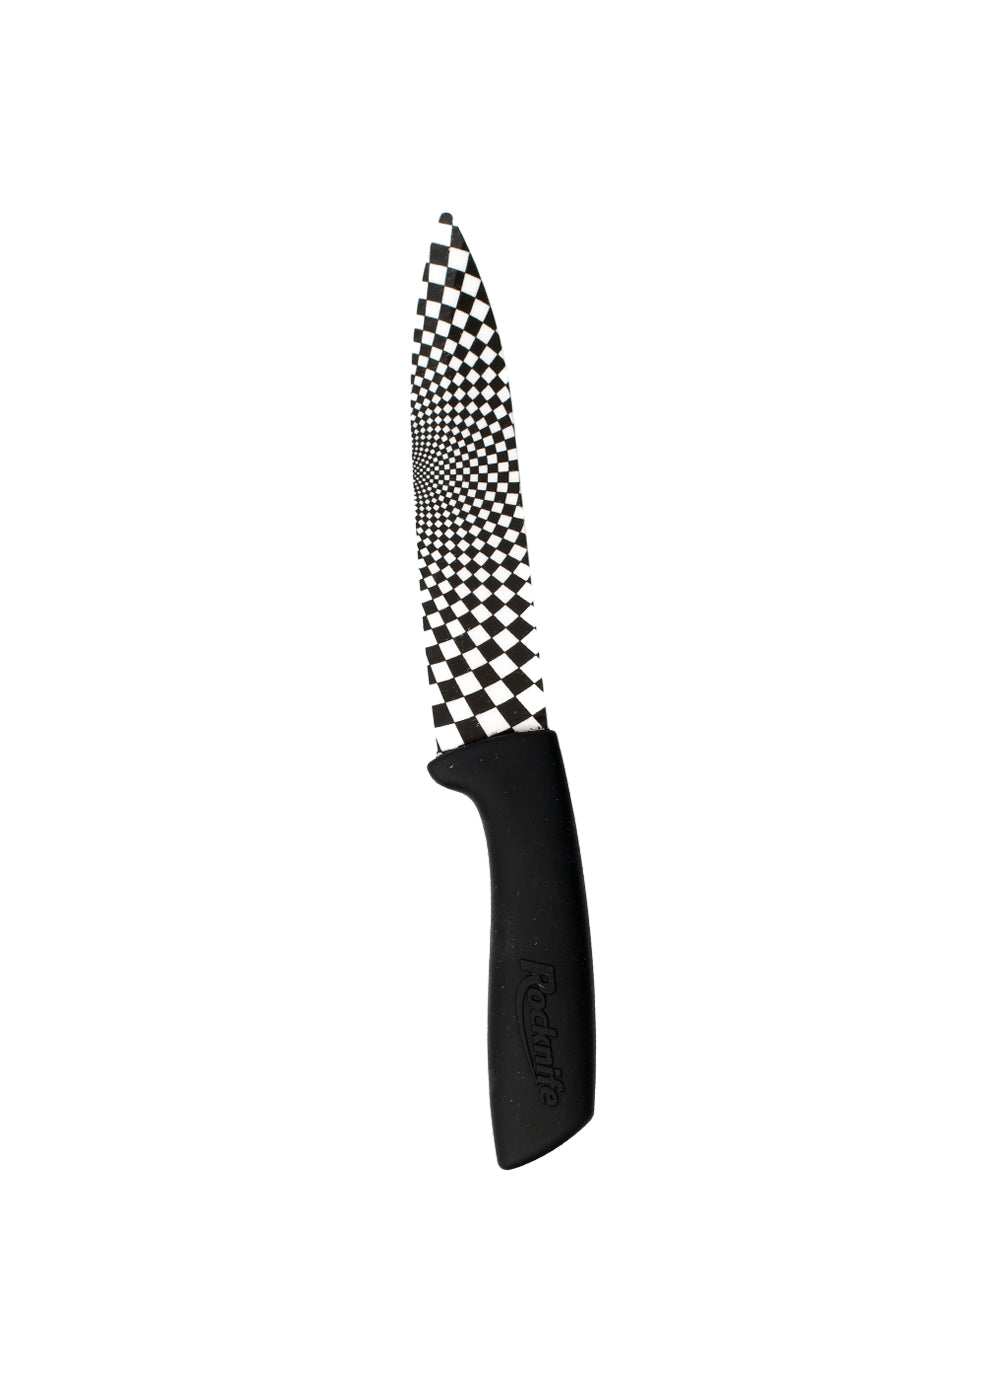 5 Inch Ceramic Kitchen Knife - Black